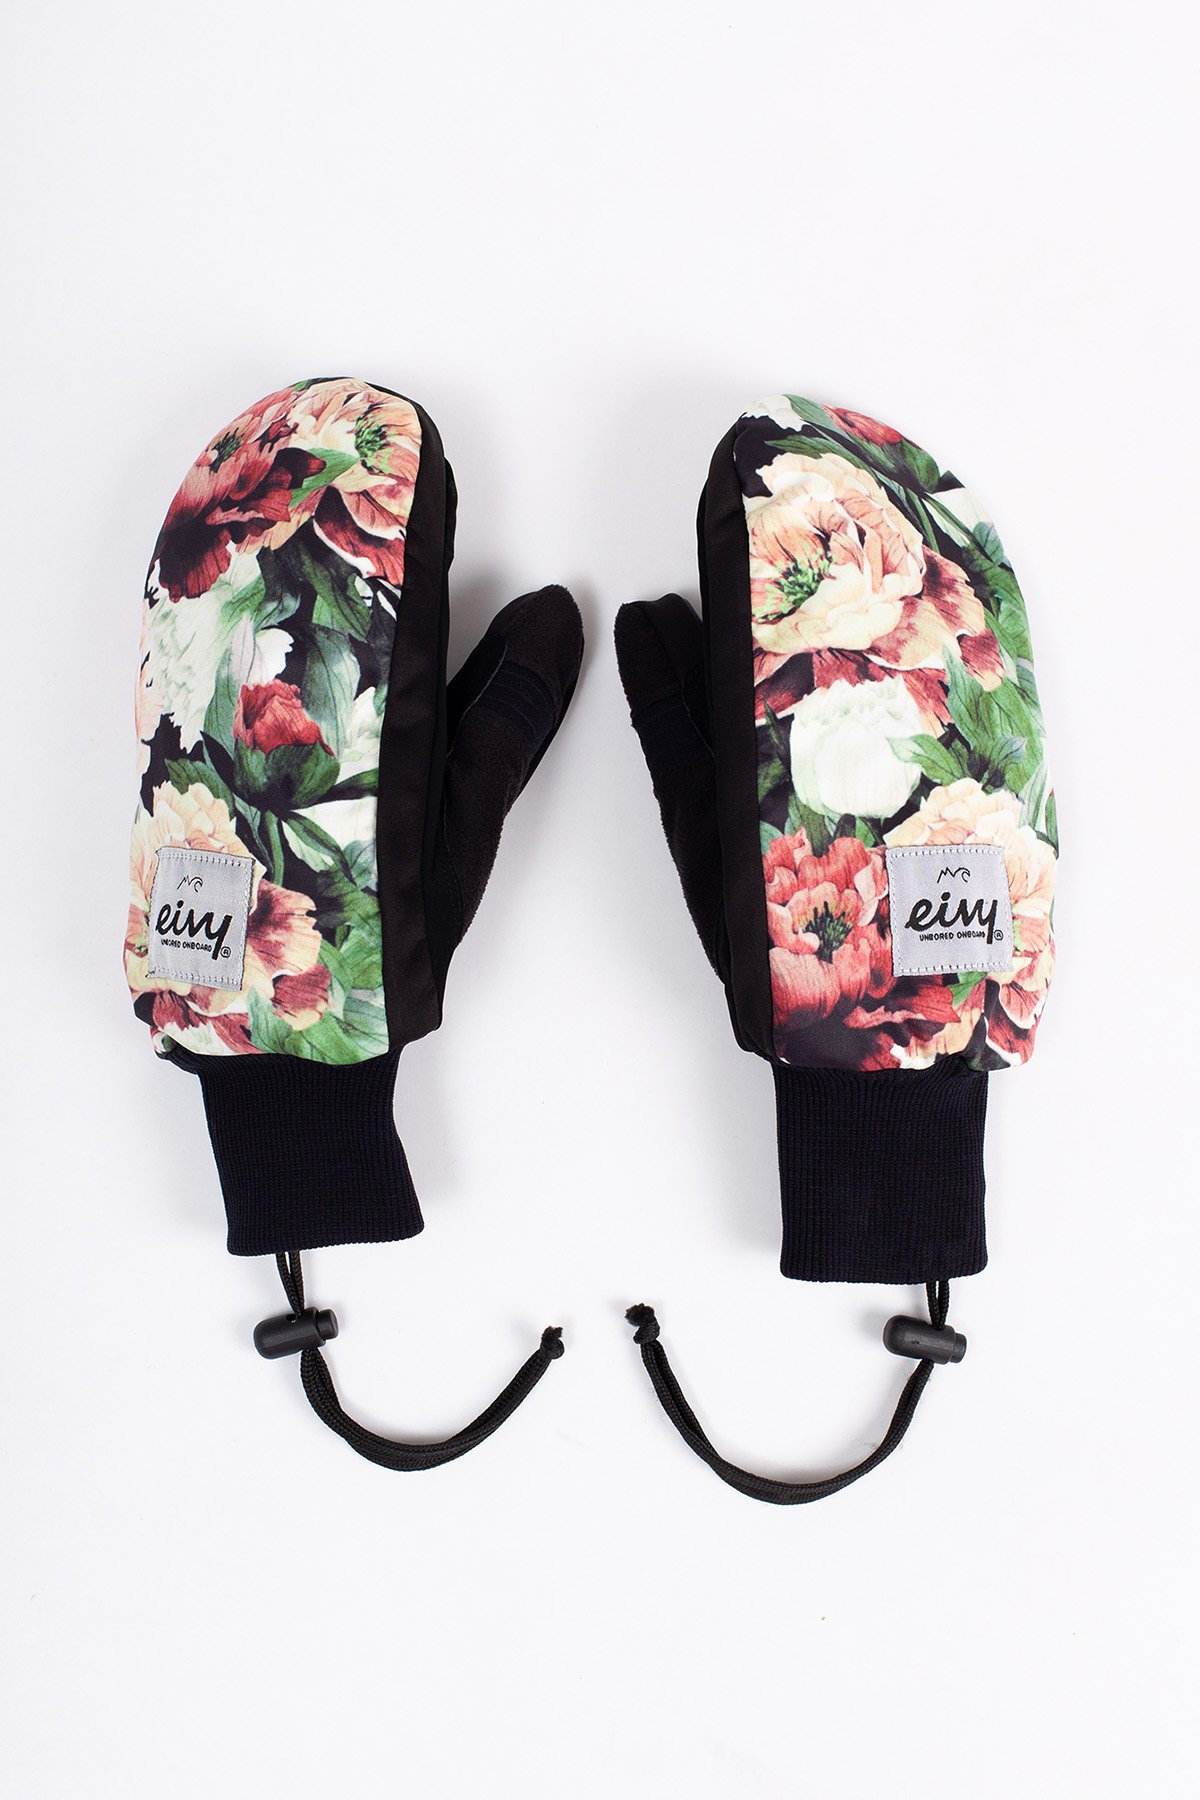 Eivy x Transform Gloves - Autumn Bloom